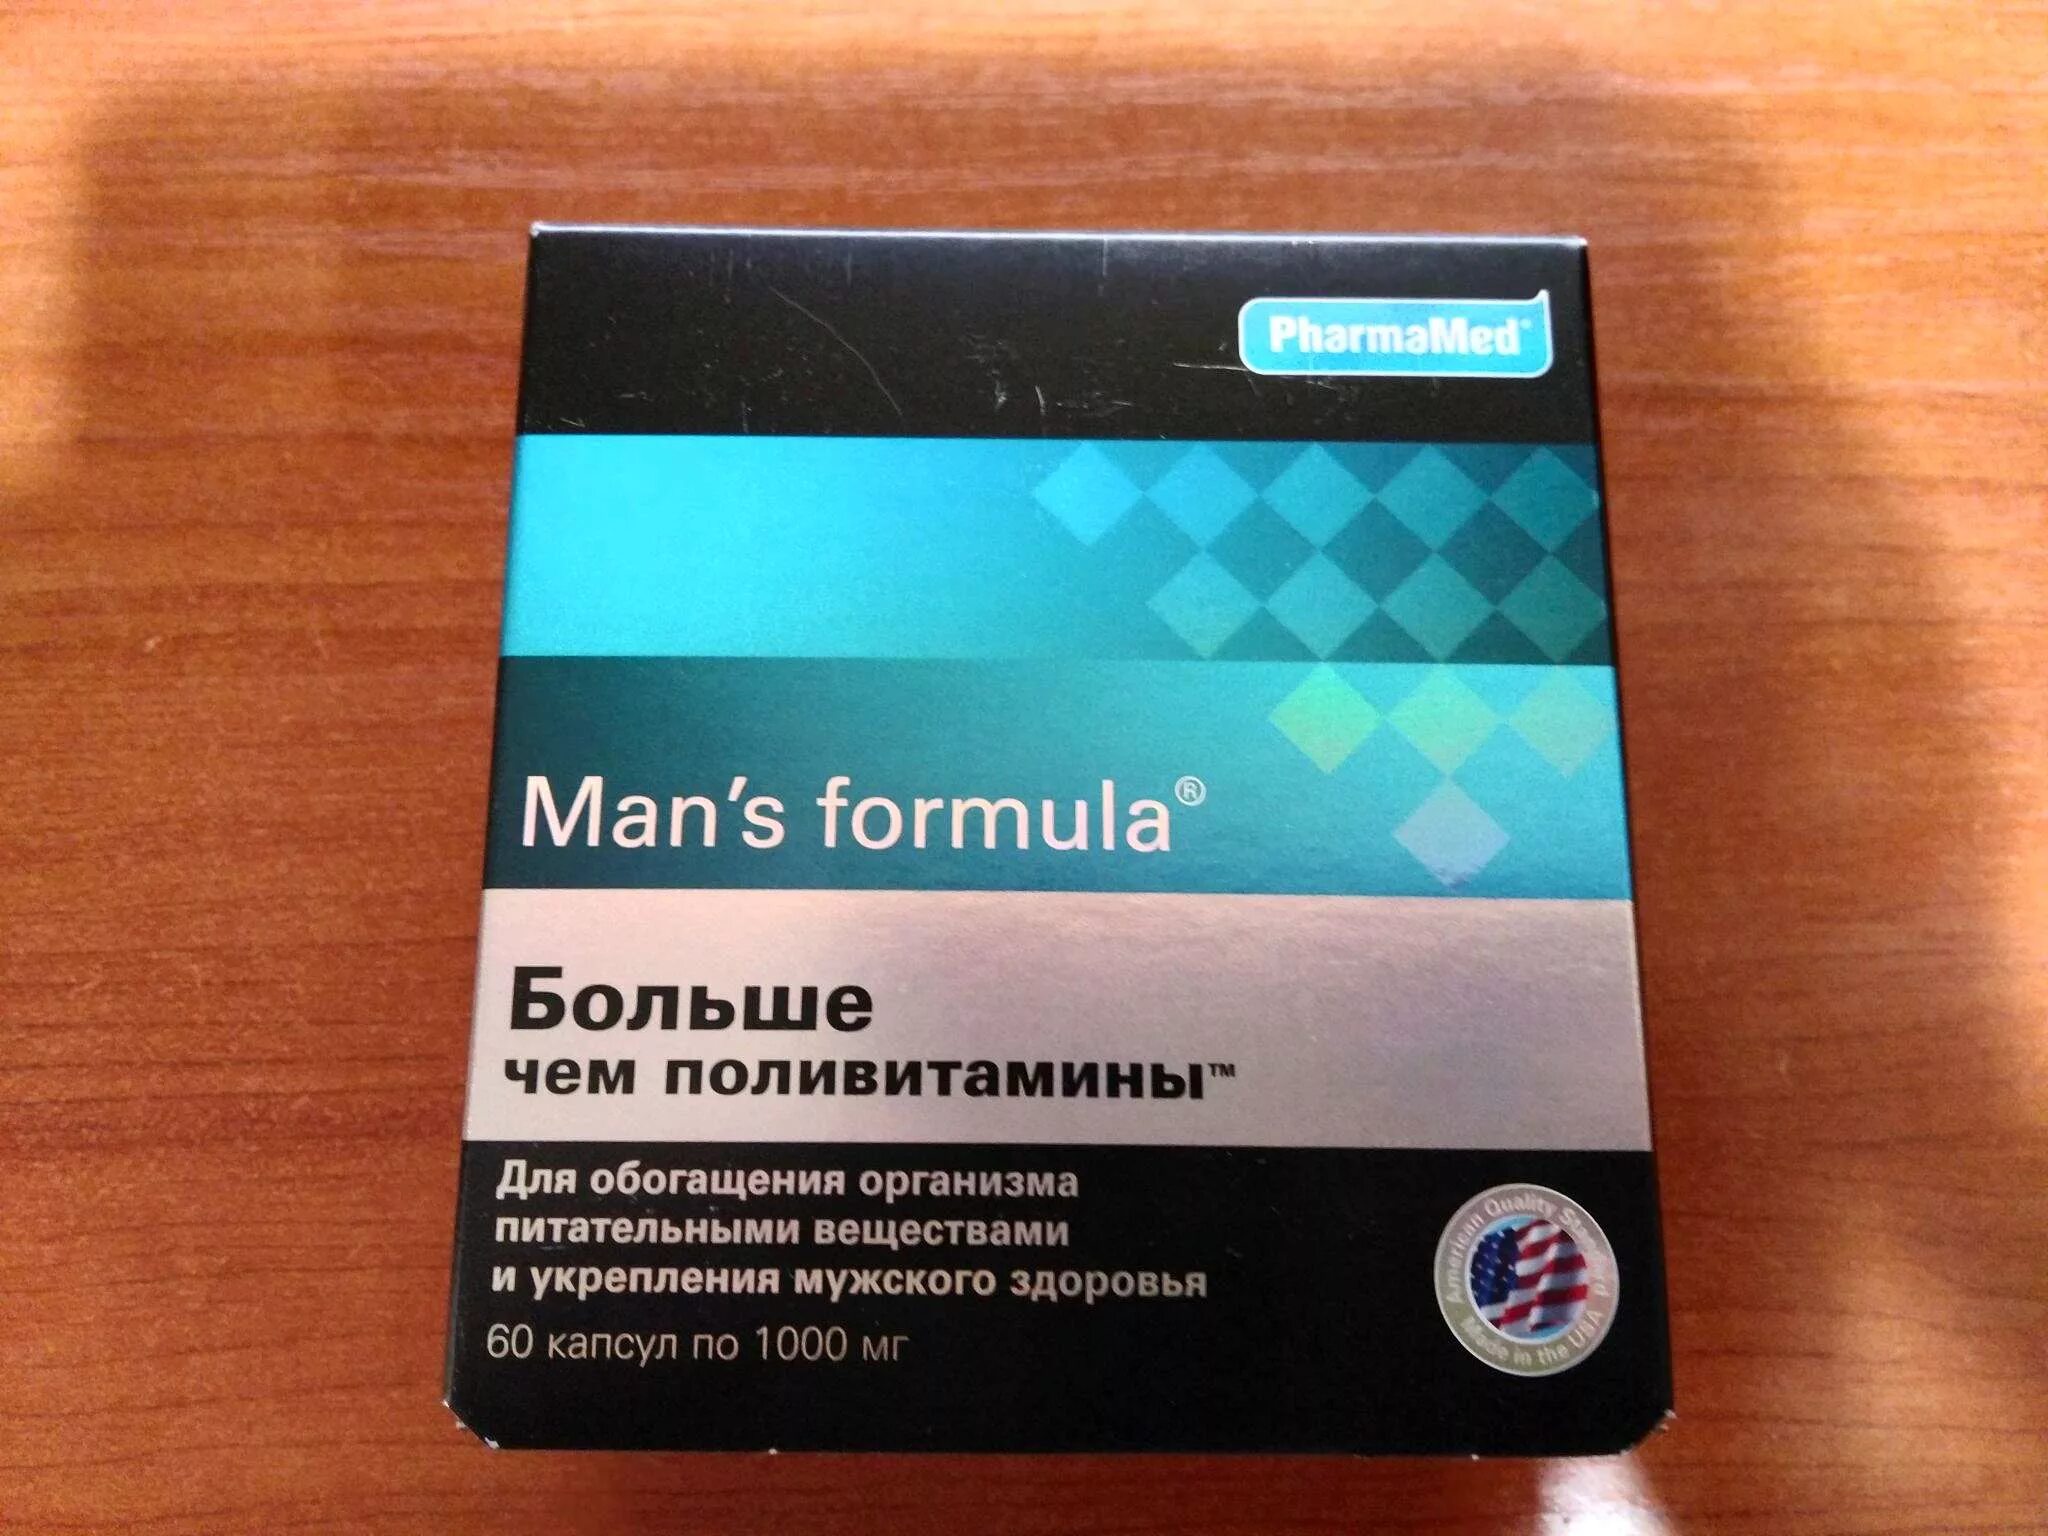 Менс потенциал форте. Mans Formula витамины для мужчин. Formula man's (больше,чем поливитамины капс n60 Вн ). Витамины man's Formula потенциал форте. Купить менс формула форте